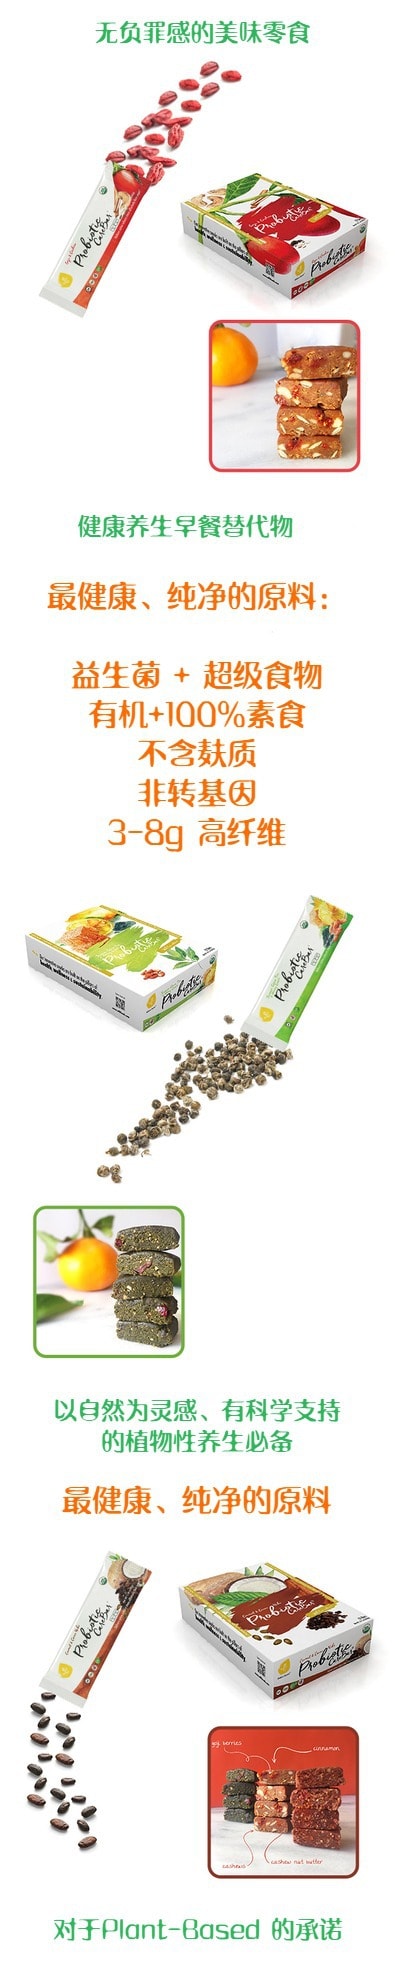 EFFi Foods 有机健康零食 - 益生菌/低糖/高纤维/养生早餐营养棒 – 蜂蜜绿茶味 45g (12支)